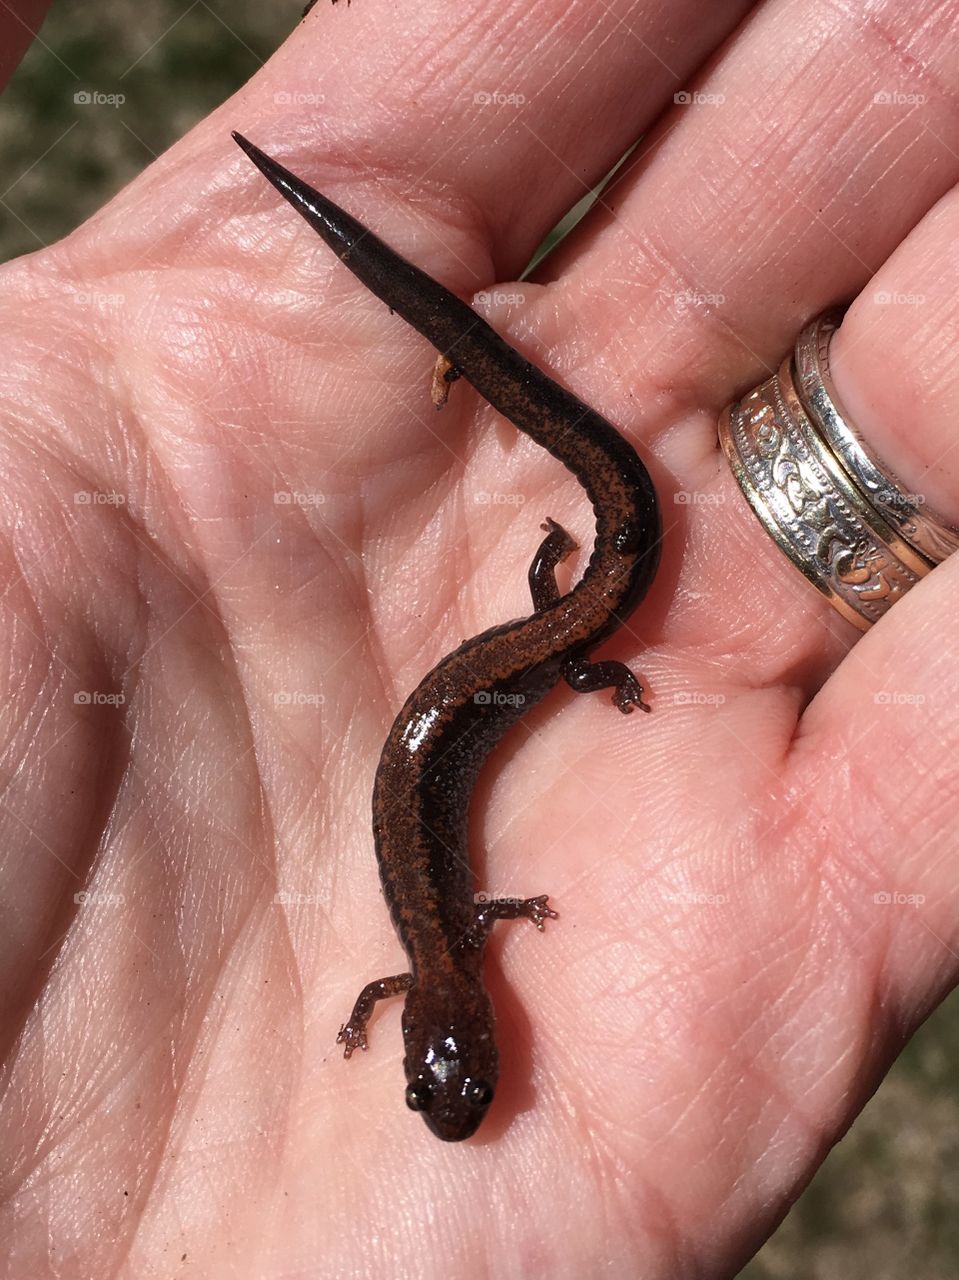 Salamander - Spring is here! 